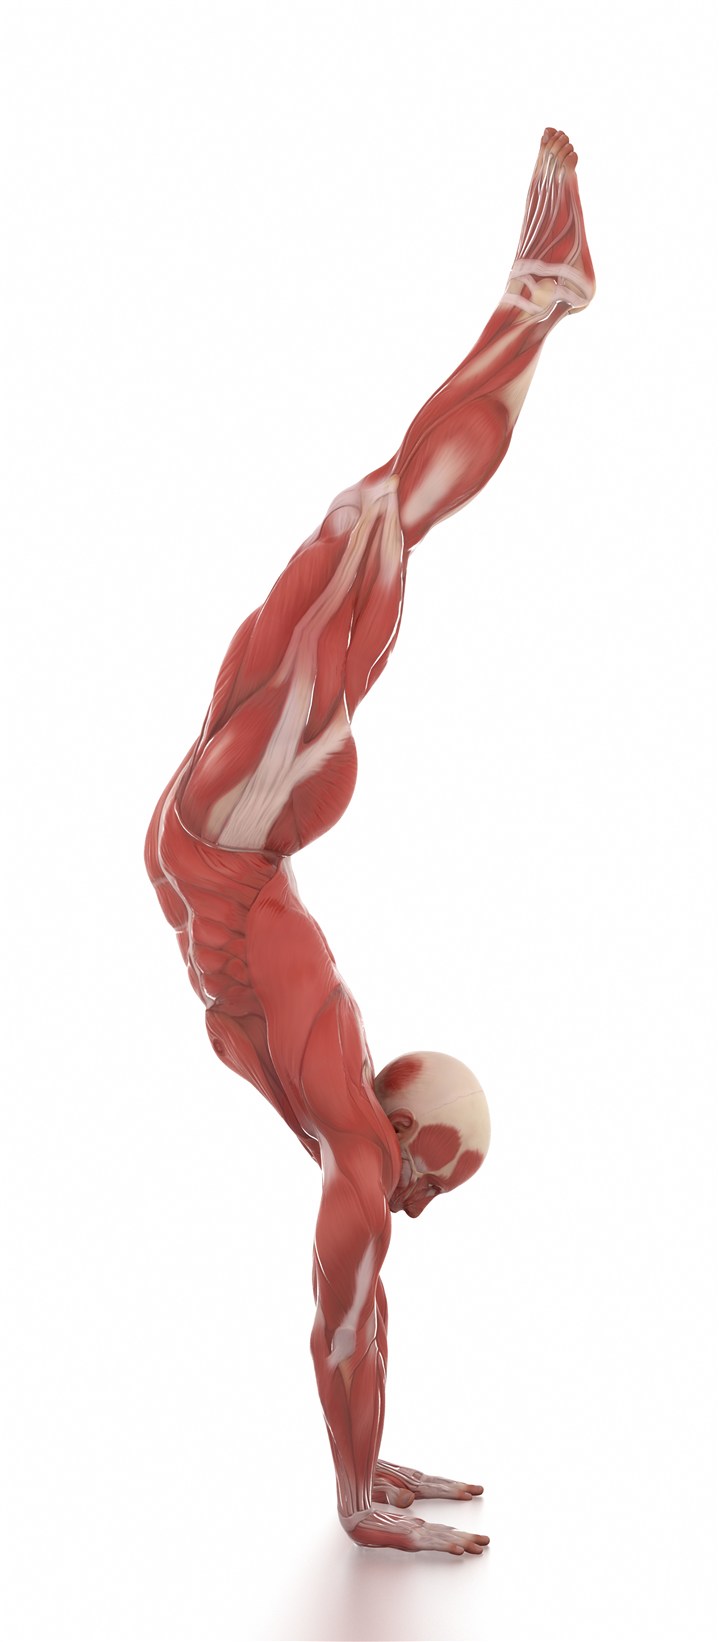 倒立的男士肌肉图人体结构图